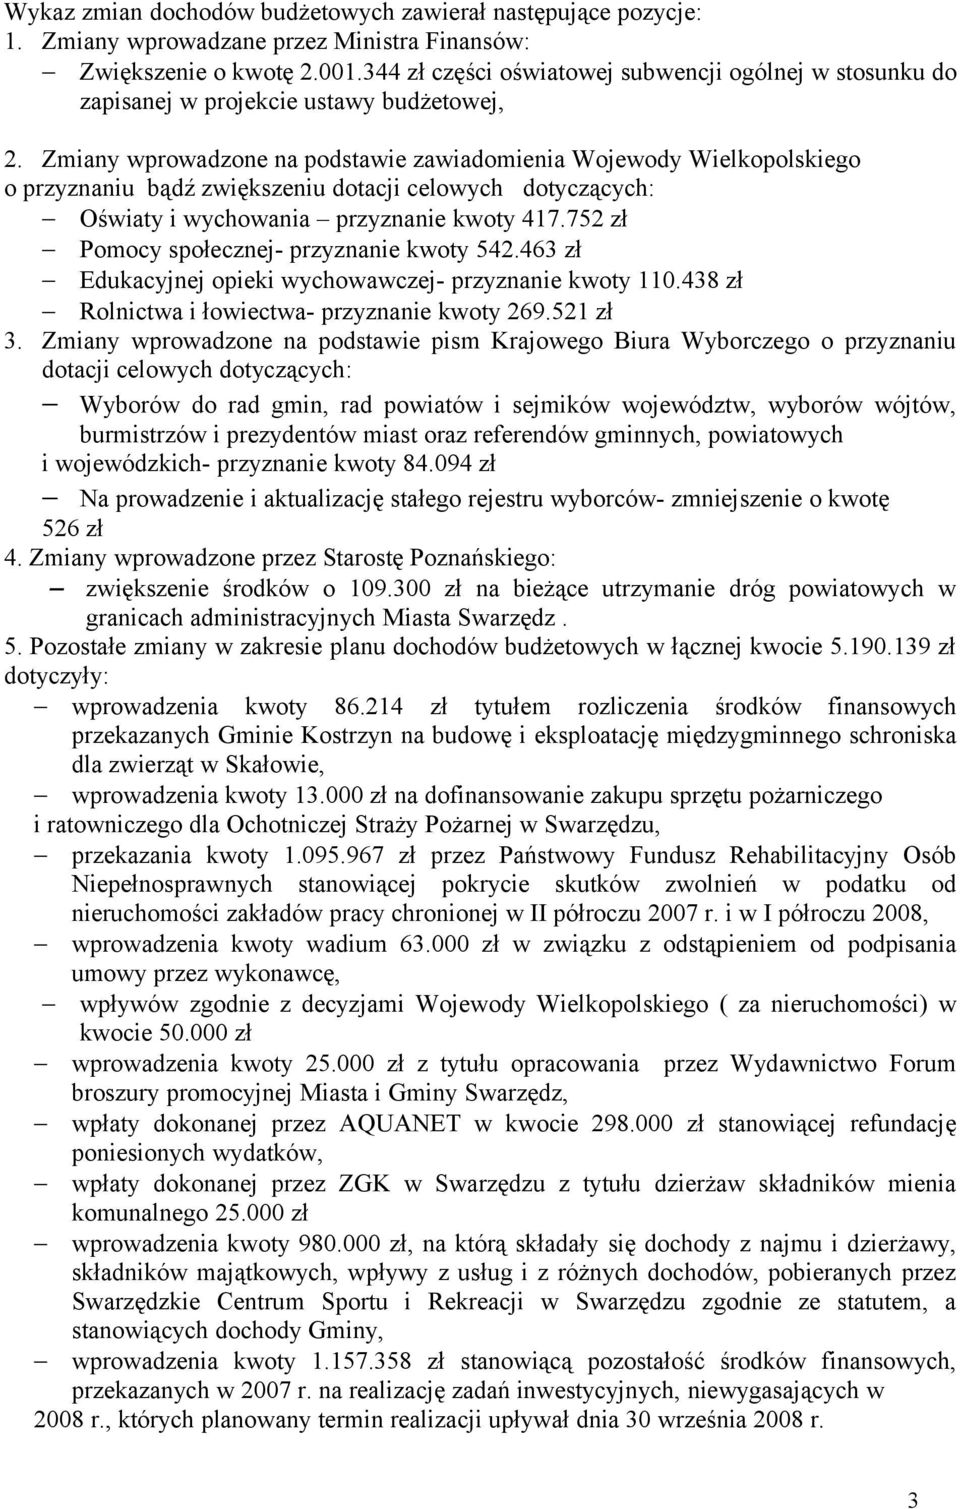 Zmiany wprowadzone na podstawie zawiadomienia Wojewody Wielkopolskiego o przyznaniu bądź zwiększeniu dotacji celowych dotyczących: Oświaty i wychowania przyznanie kwoty 417.